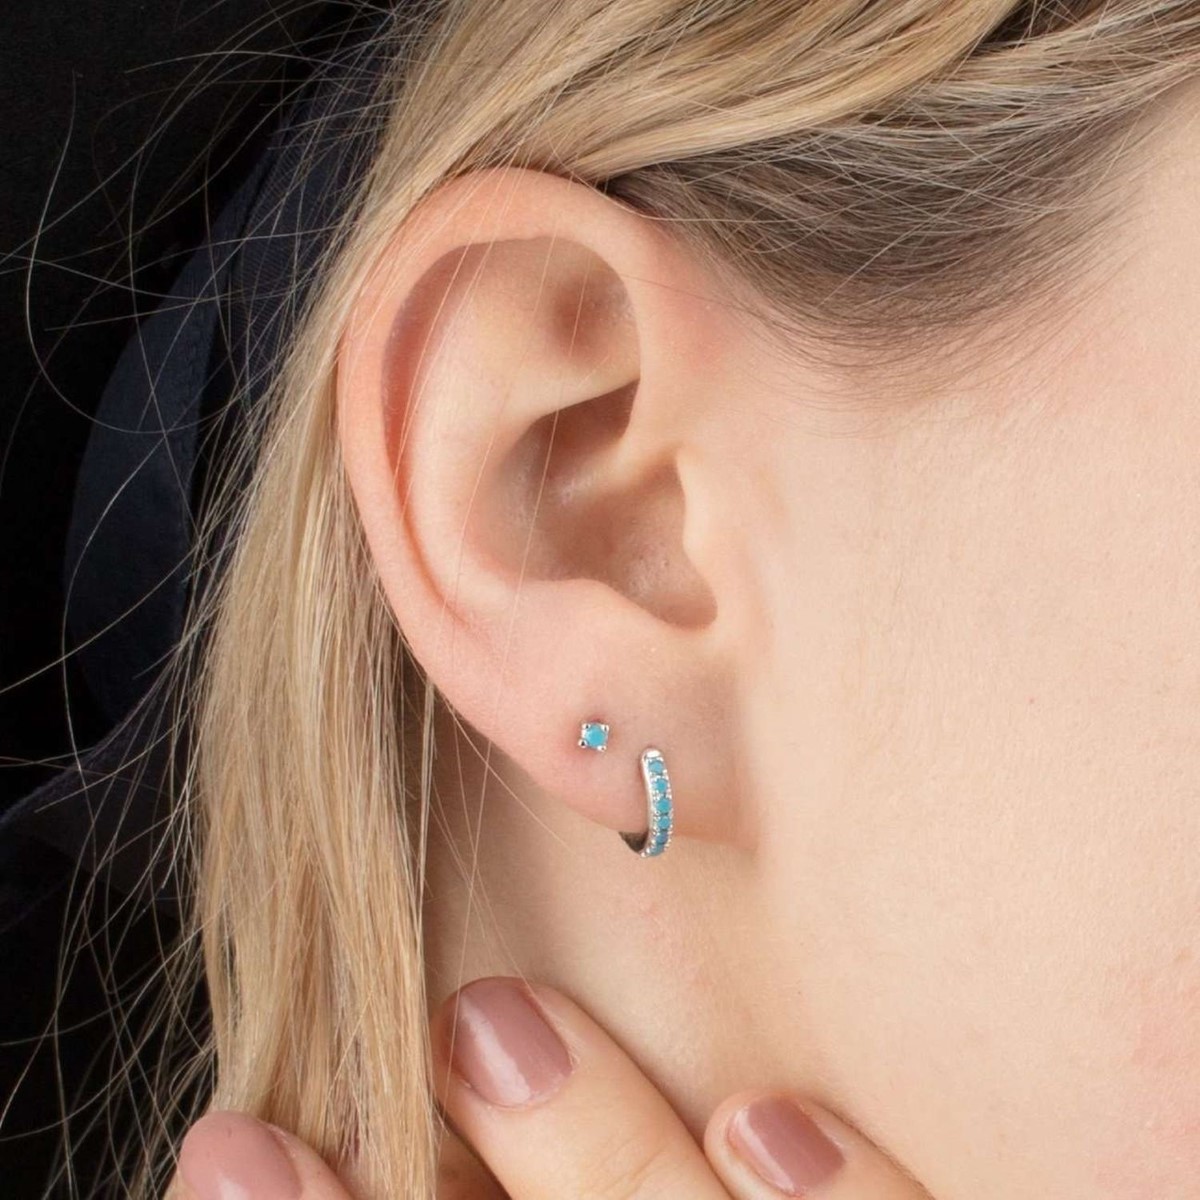 Scream Pretty Huggie Hoop Earrings With Turquoise Stones - Silver SPESSS133